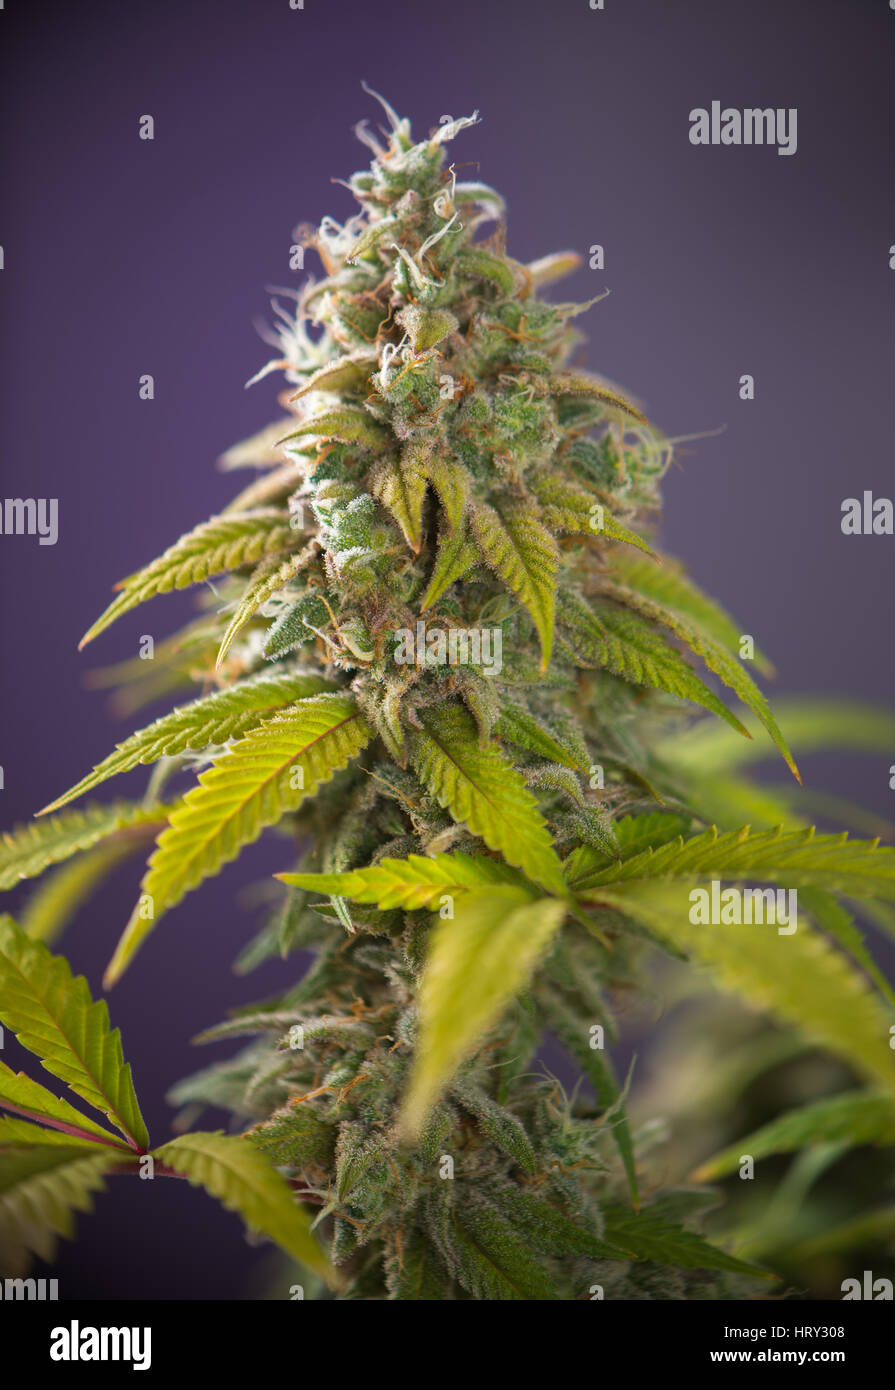 Detail des Cannabis Cola (Thousand Oaks-Marihuana-Sorte) mit sichtbaren Haare und Blättern auf späten Blüte - medizinische Marihuana-Zucht Konzept Stockfoto